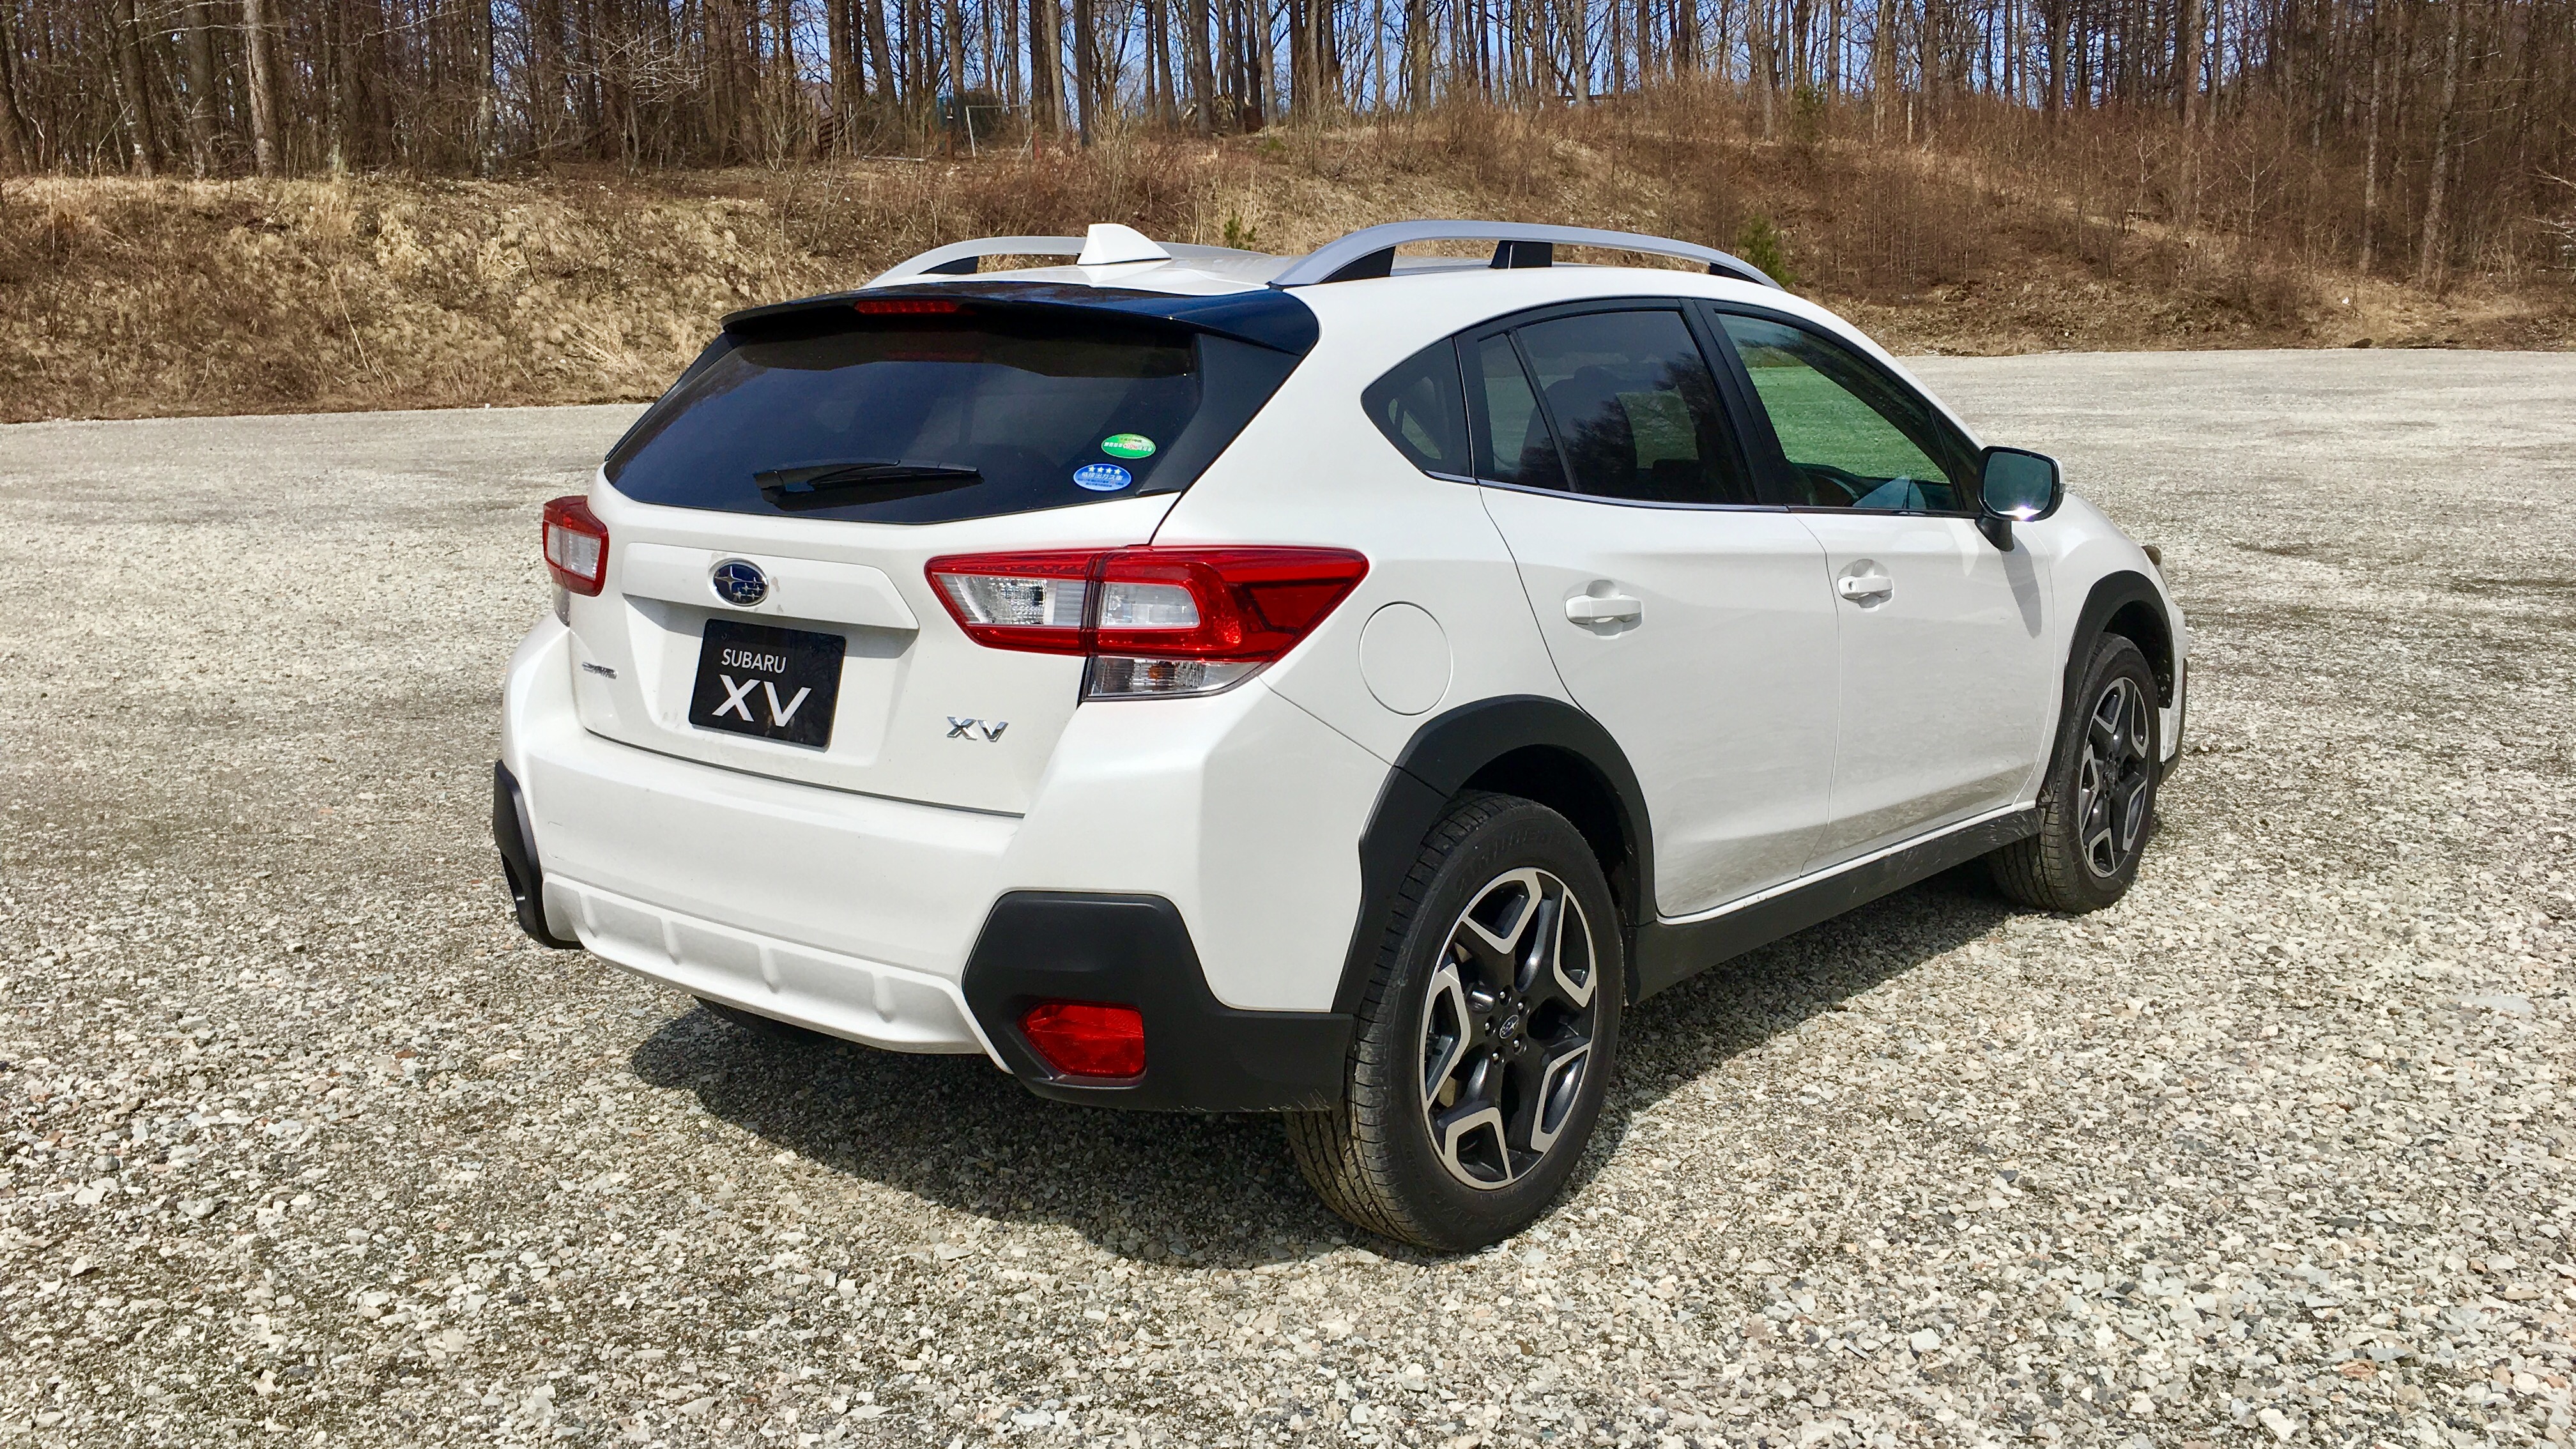 2017 Subaru XV review CarAdvice